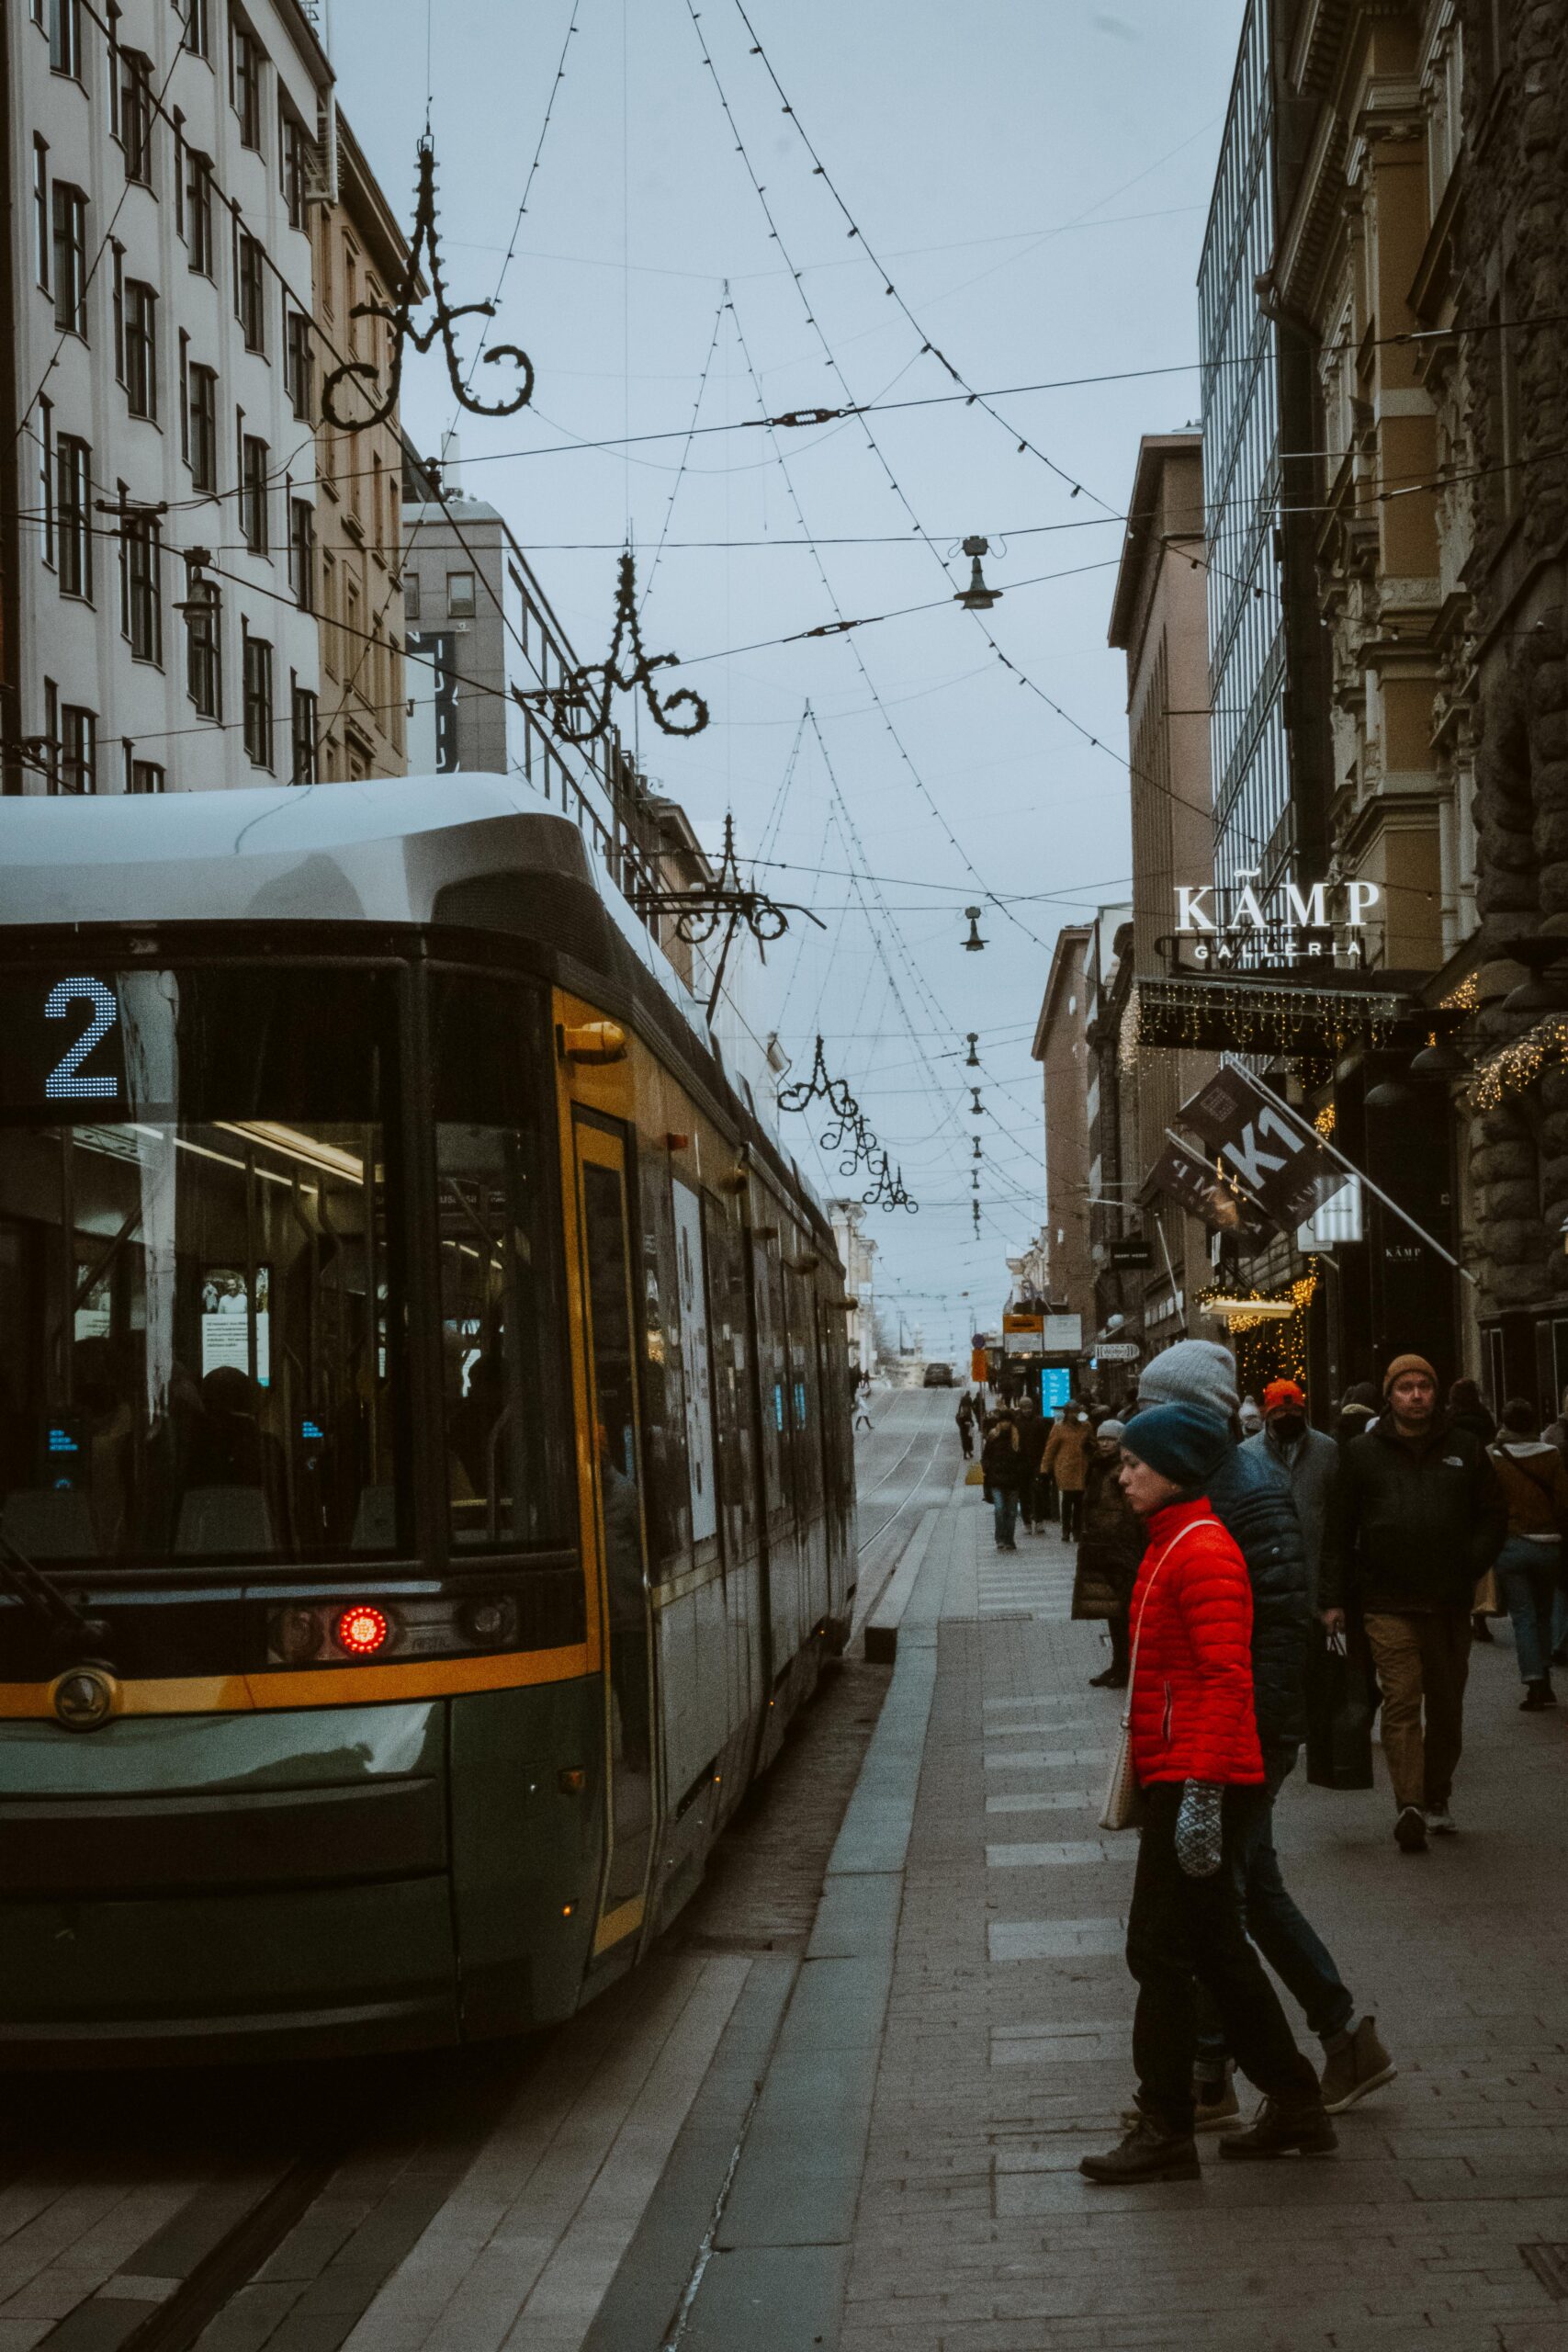 Helsinki Tram